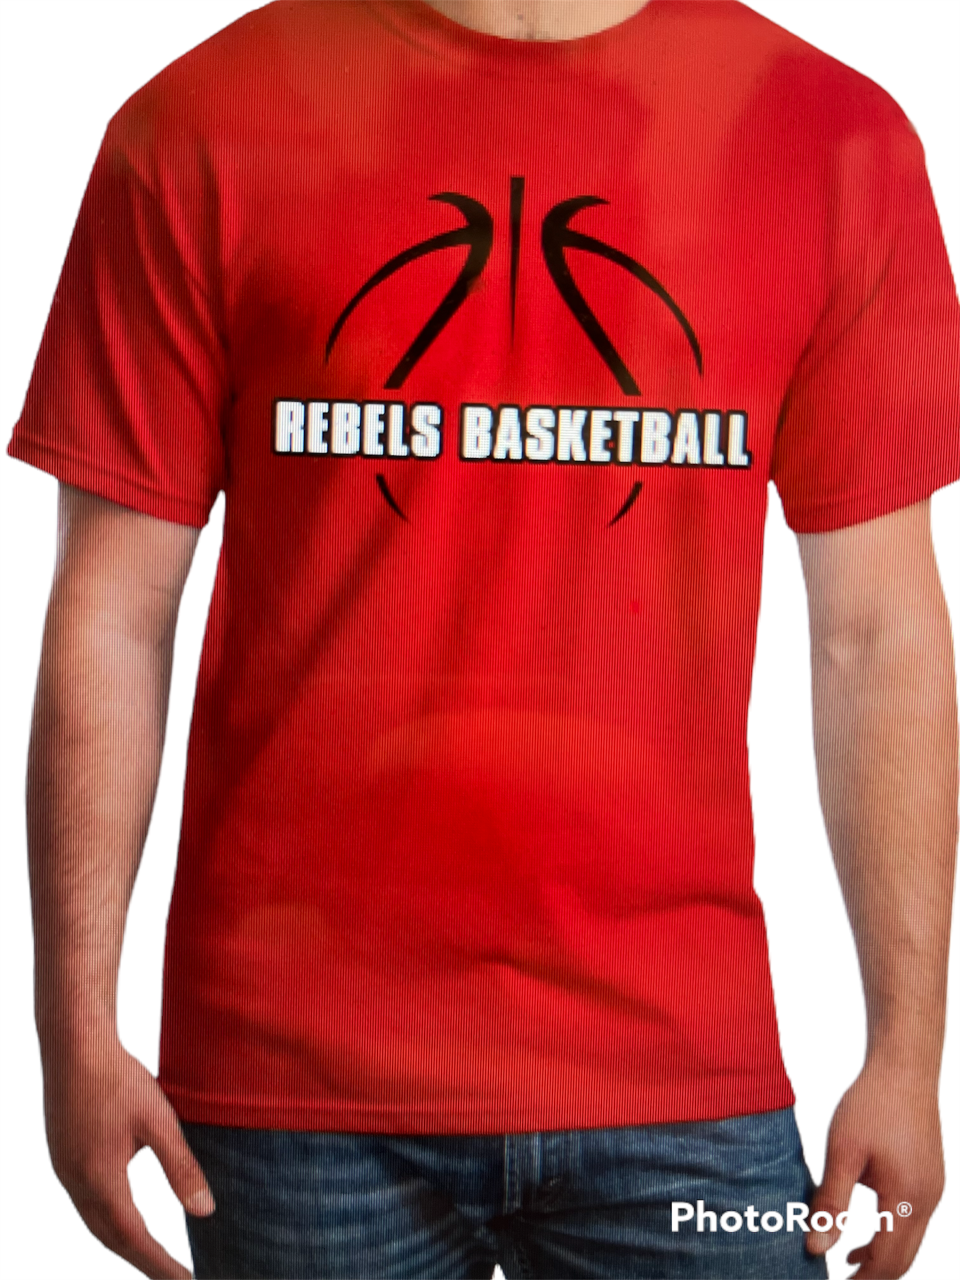 Rebels Basketball Fanfare 2 color